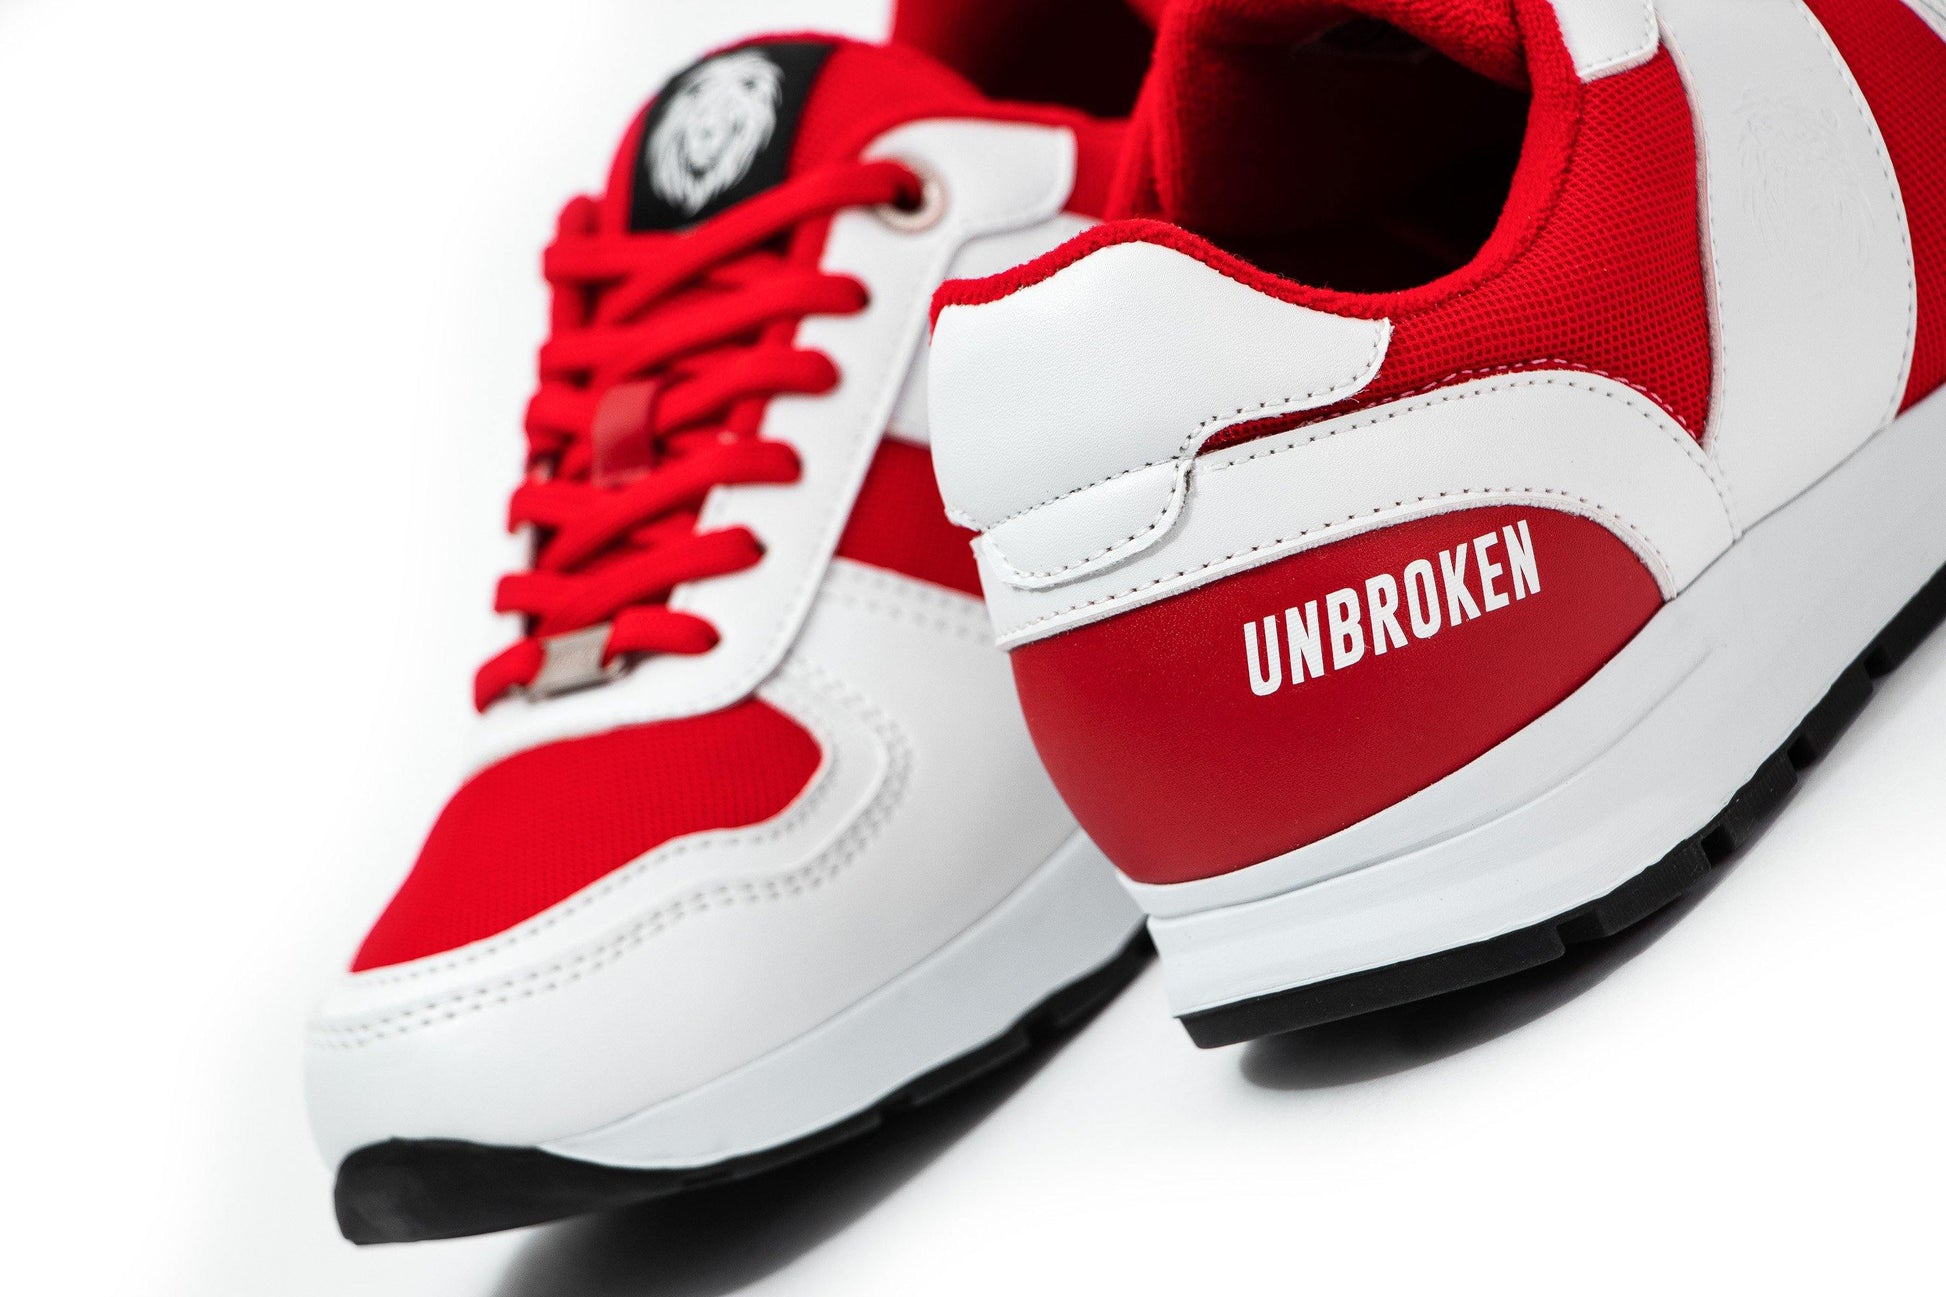 Tenis Unbroken Falcon rojo - Unbroken Sports Wear 